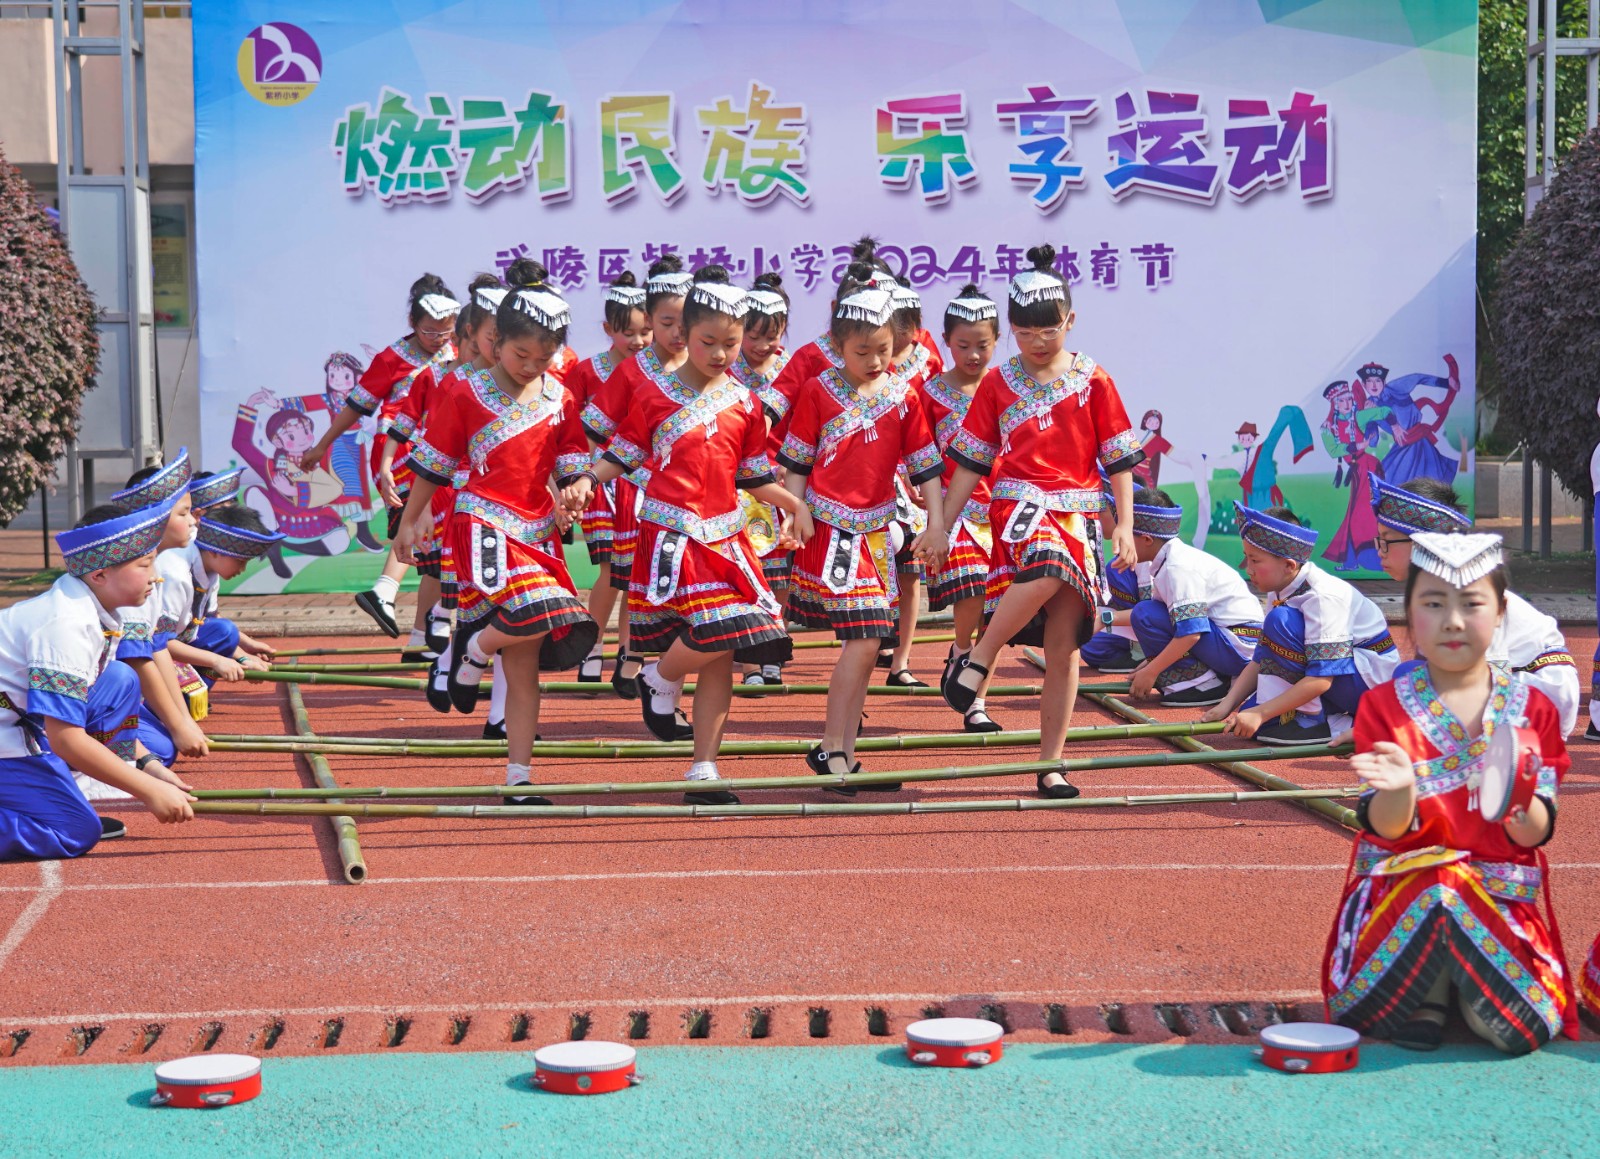 武陵区紫桥小学举行春季运动会开幕式